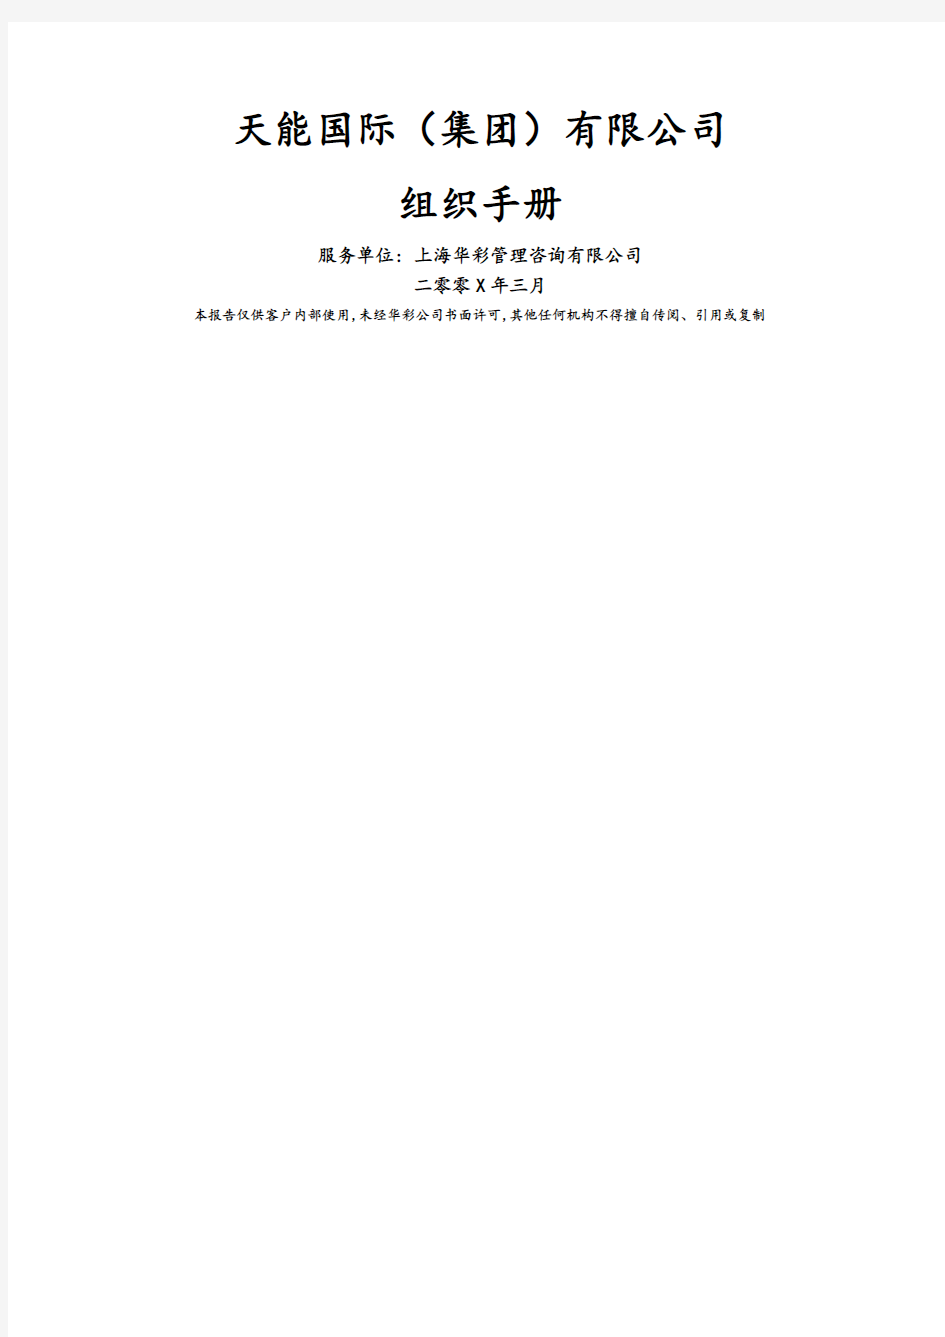 华彩咨询国际集团公司组织手册